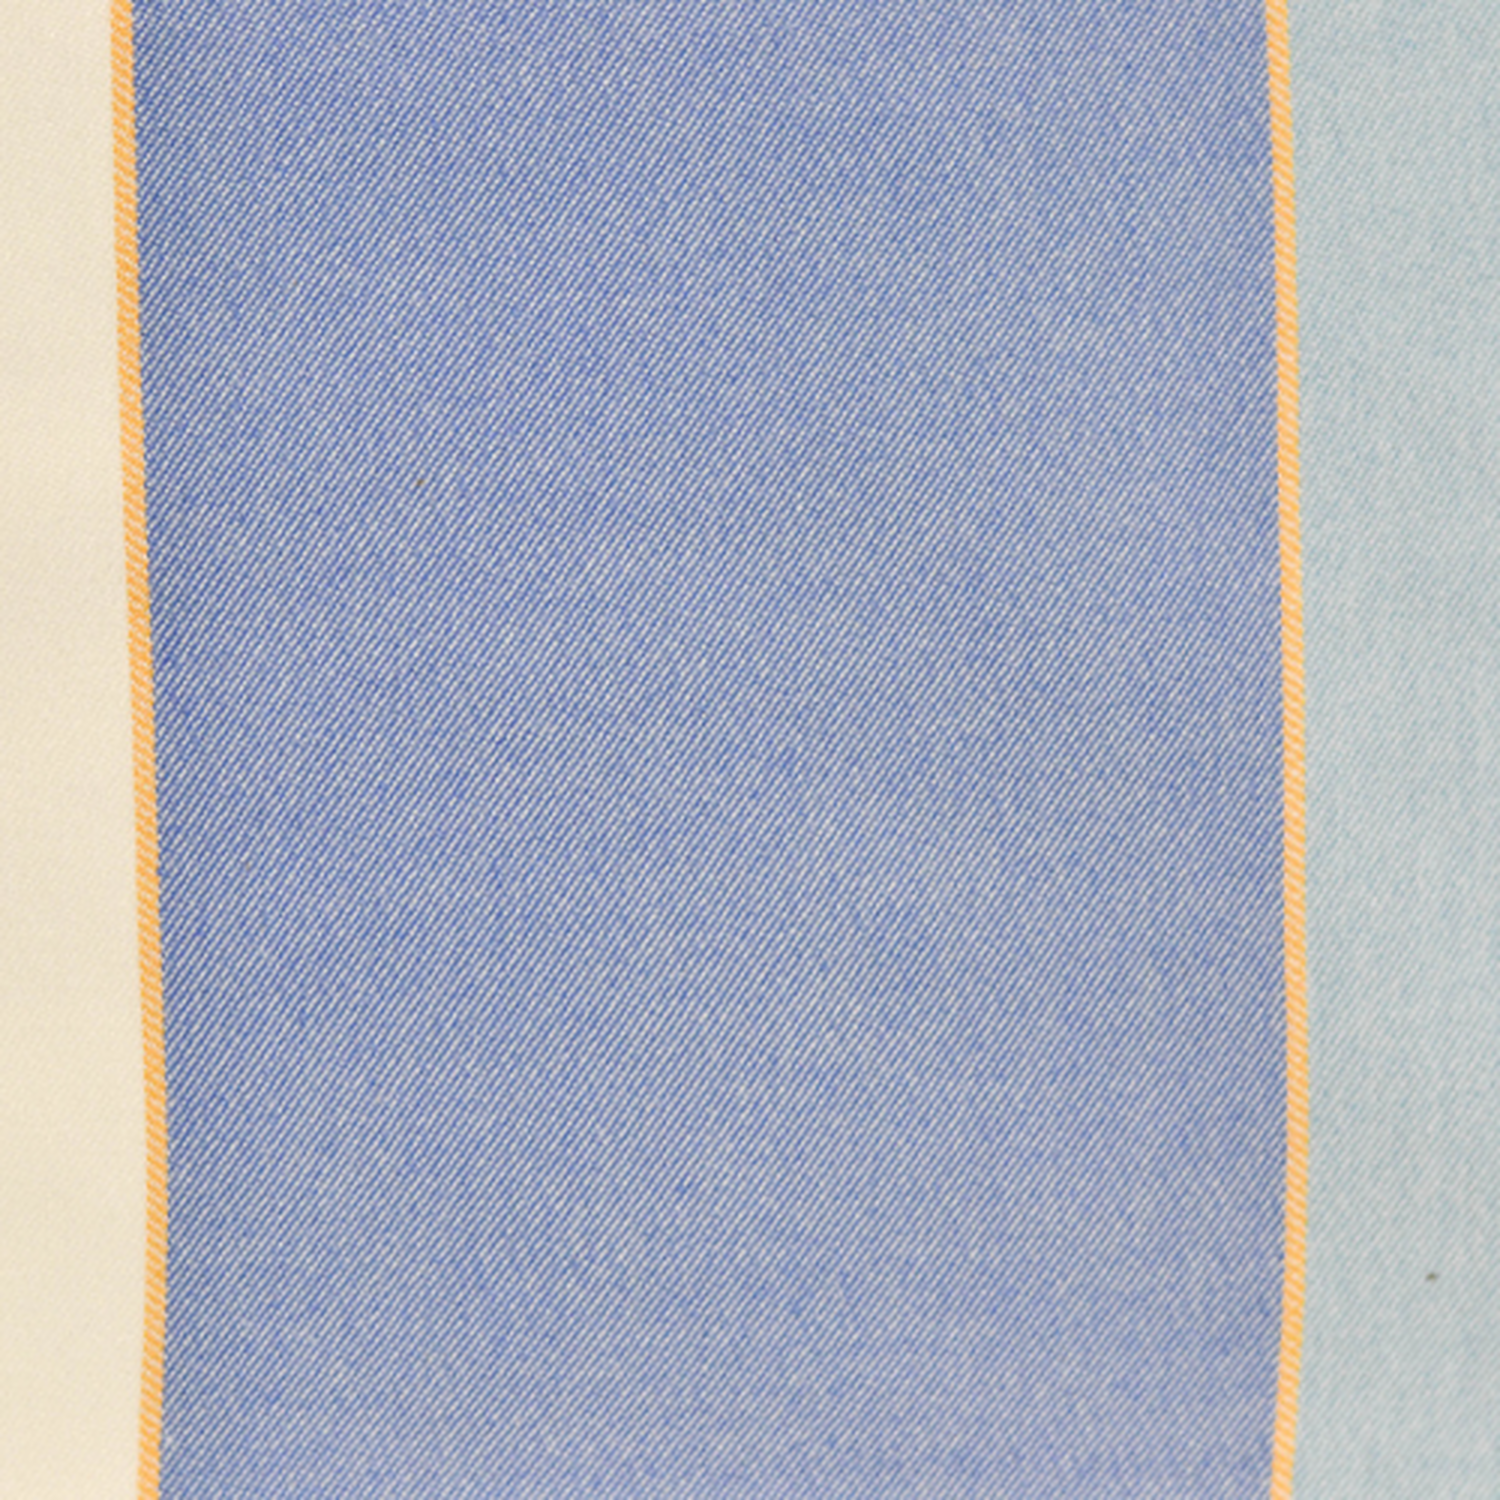 Estovalles rectangular color blau ratllat